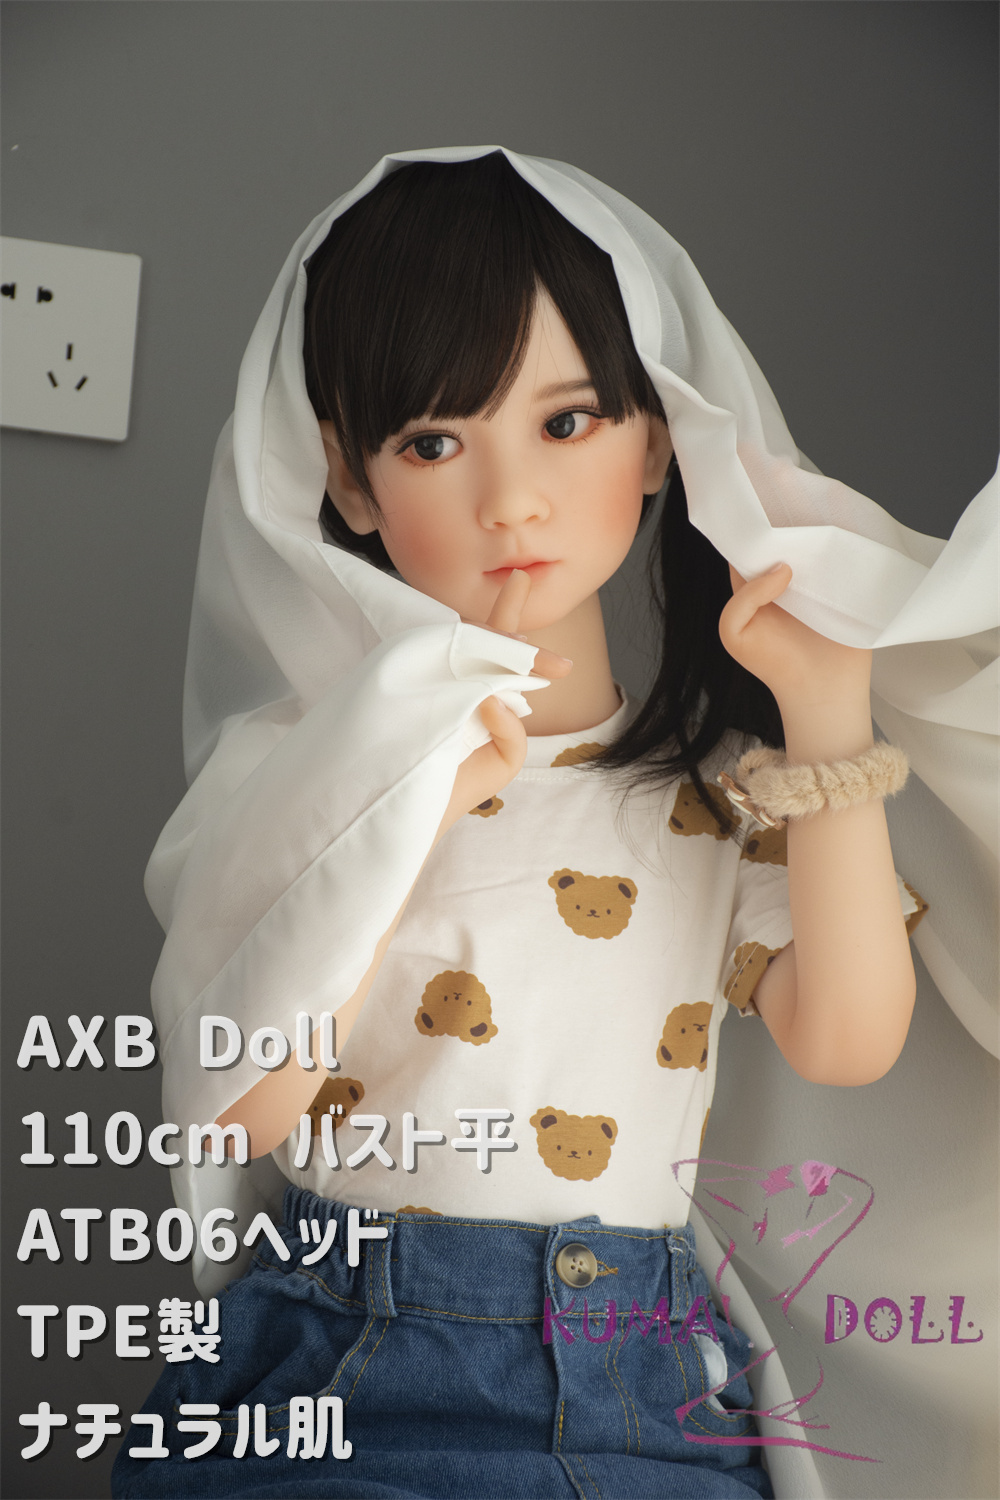 AXB Doll 110cm バスト平 ATB06 ヘッド 最新リアルメイク無料 TPE製ラブドール